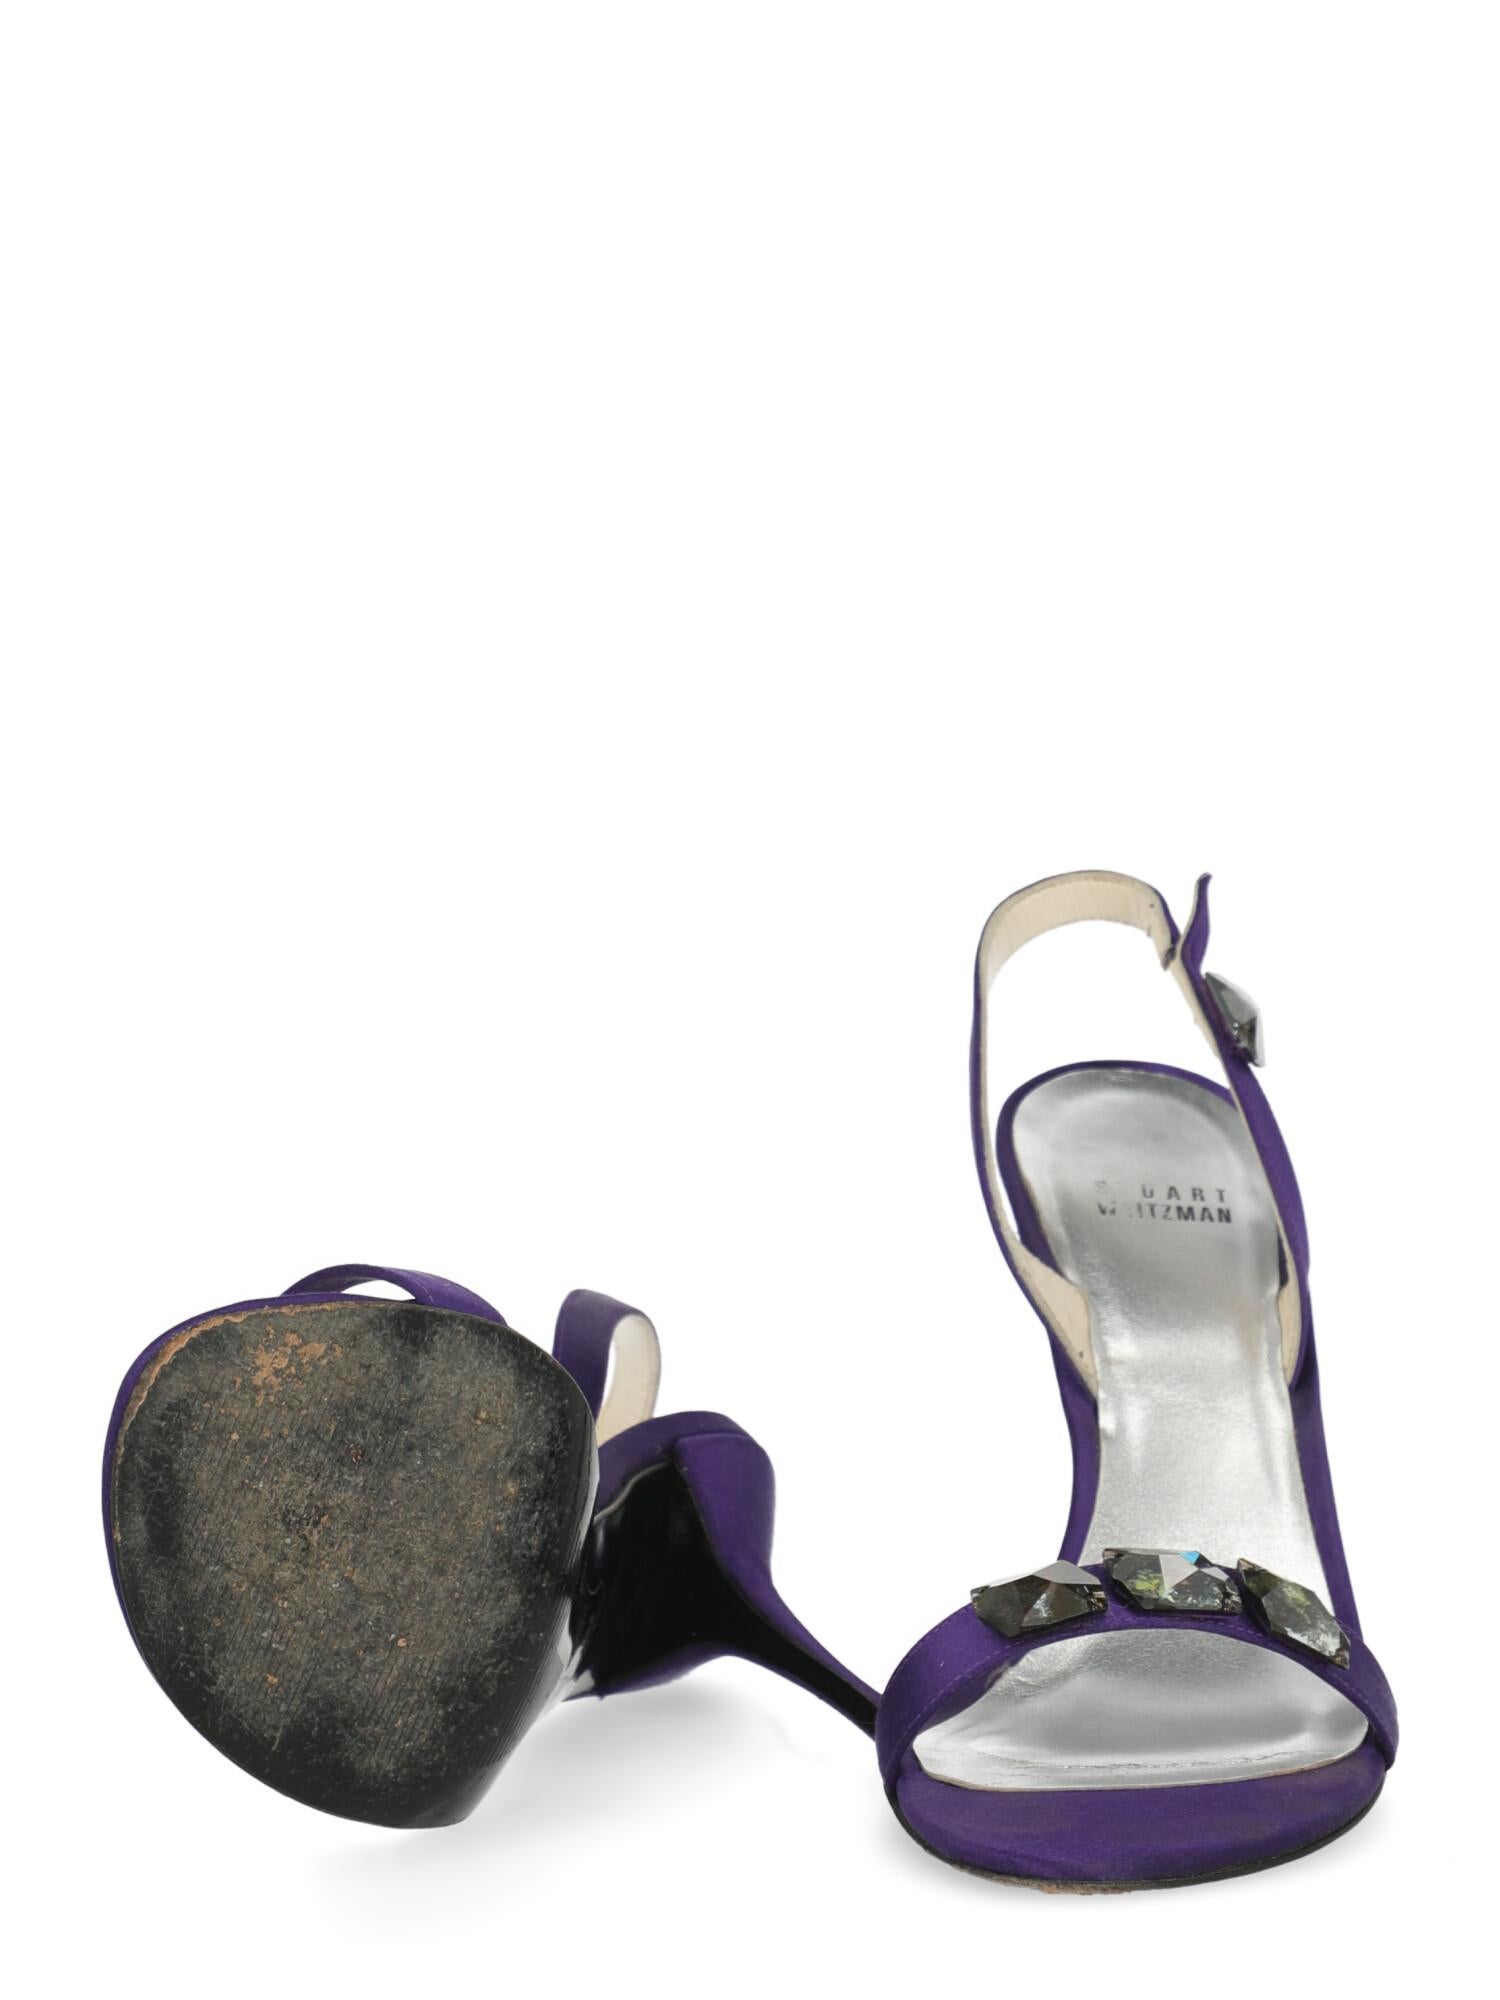 stuart weitzman purple heels